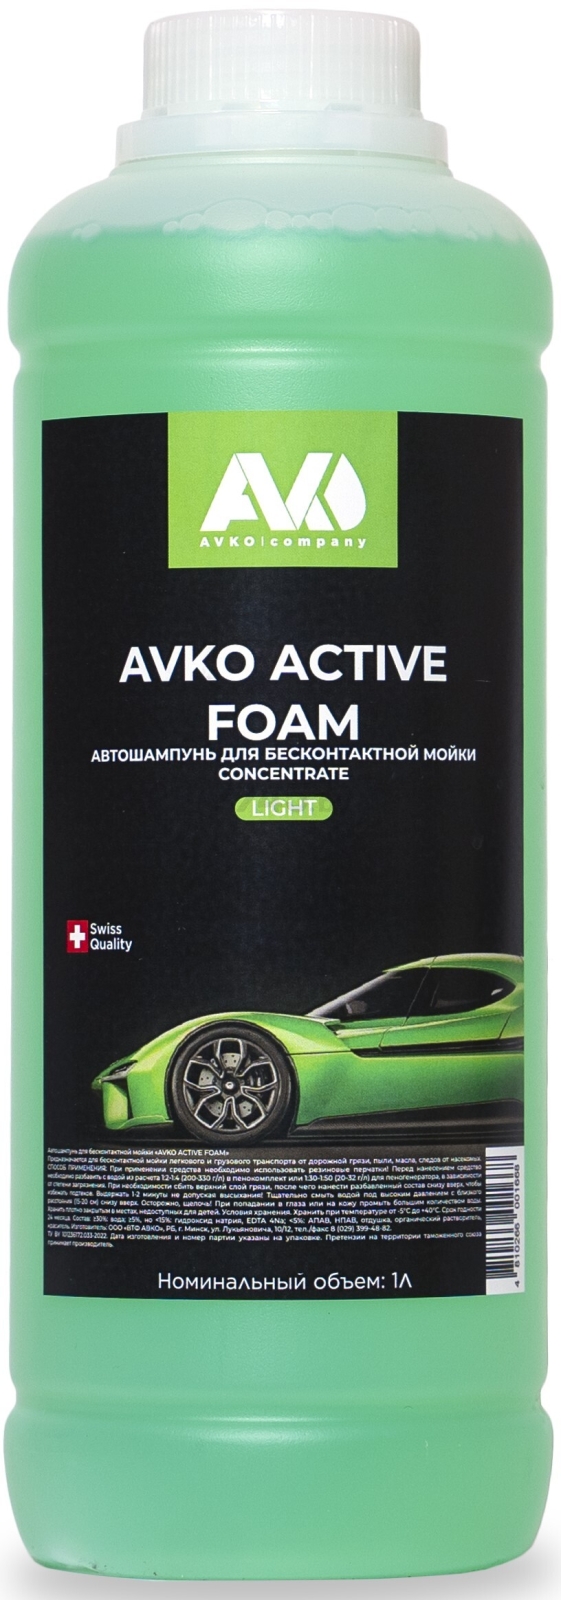 Автошампунь для бесконтактной мойки AVKO Active Foam Light 1 л